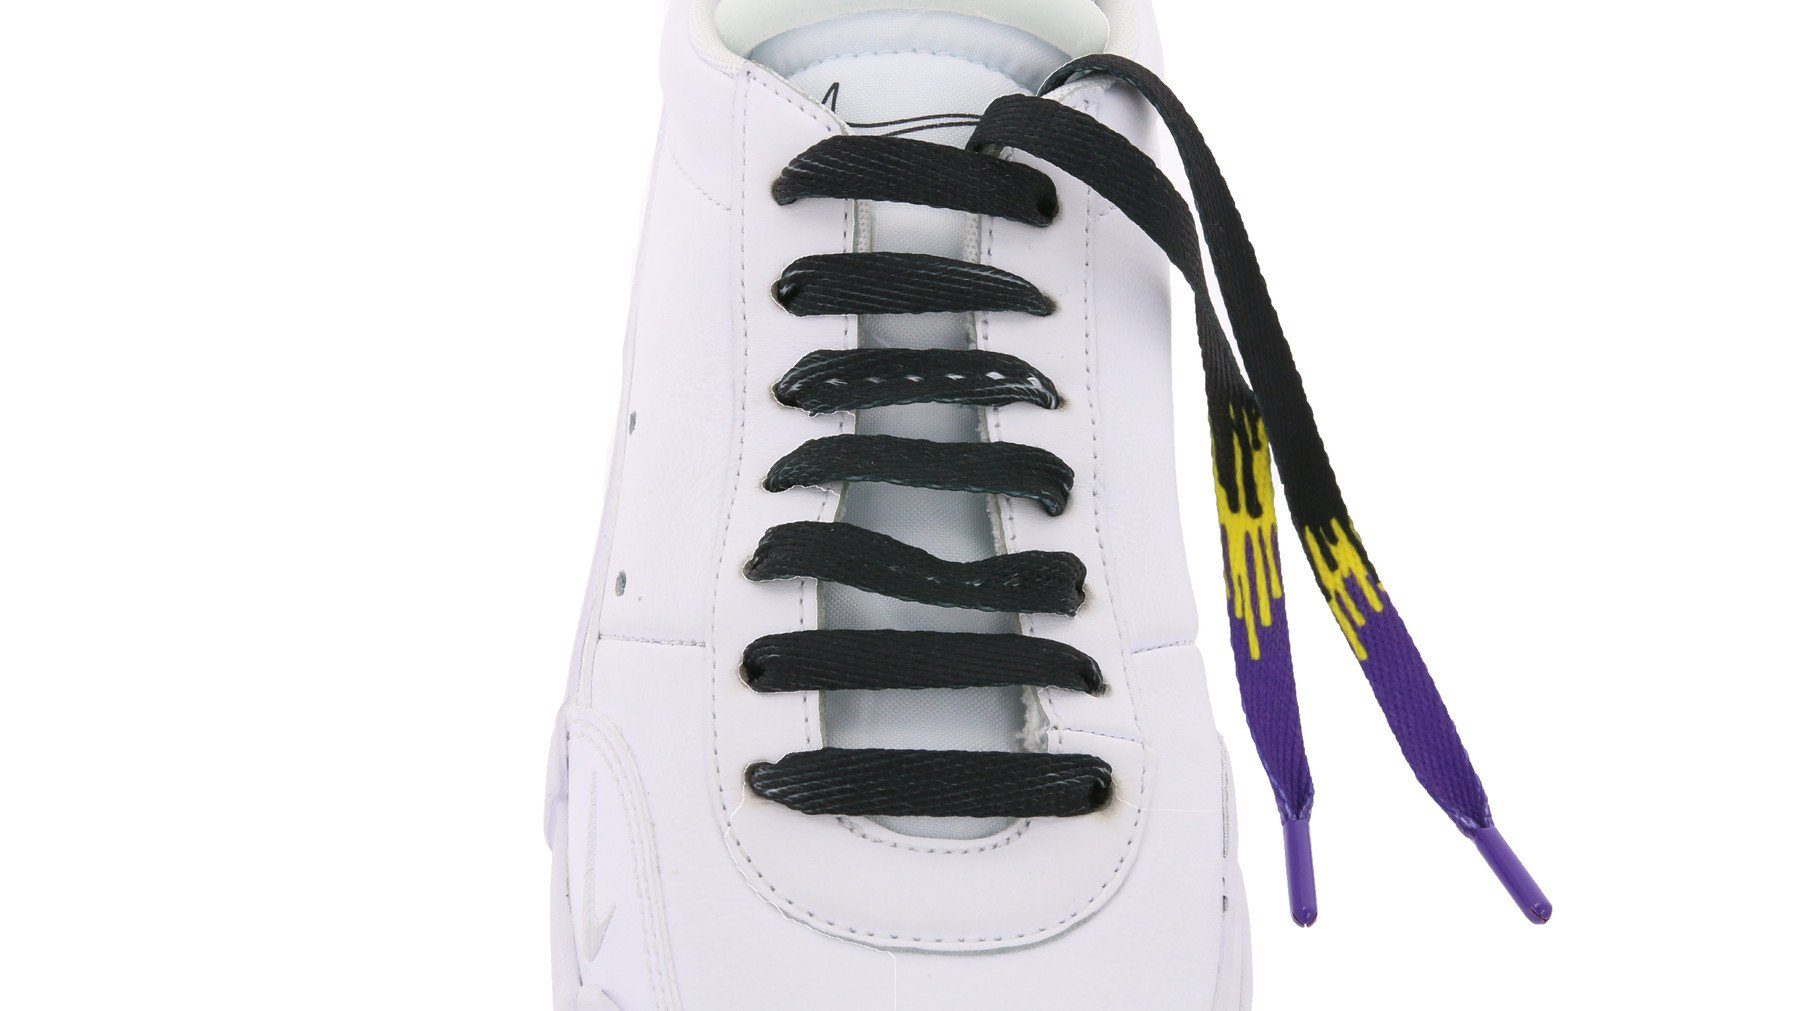 Schuhbänder Schuhe Schnürbänder Schnürsenkel Schnürsenkel TubeLaces coole Tubelaces Schwarz/Violett/Gelb